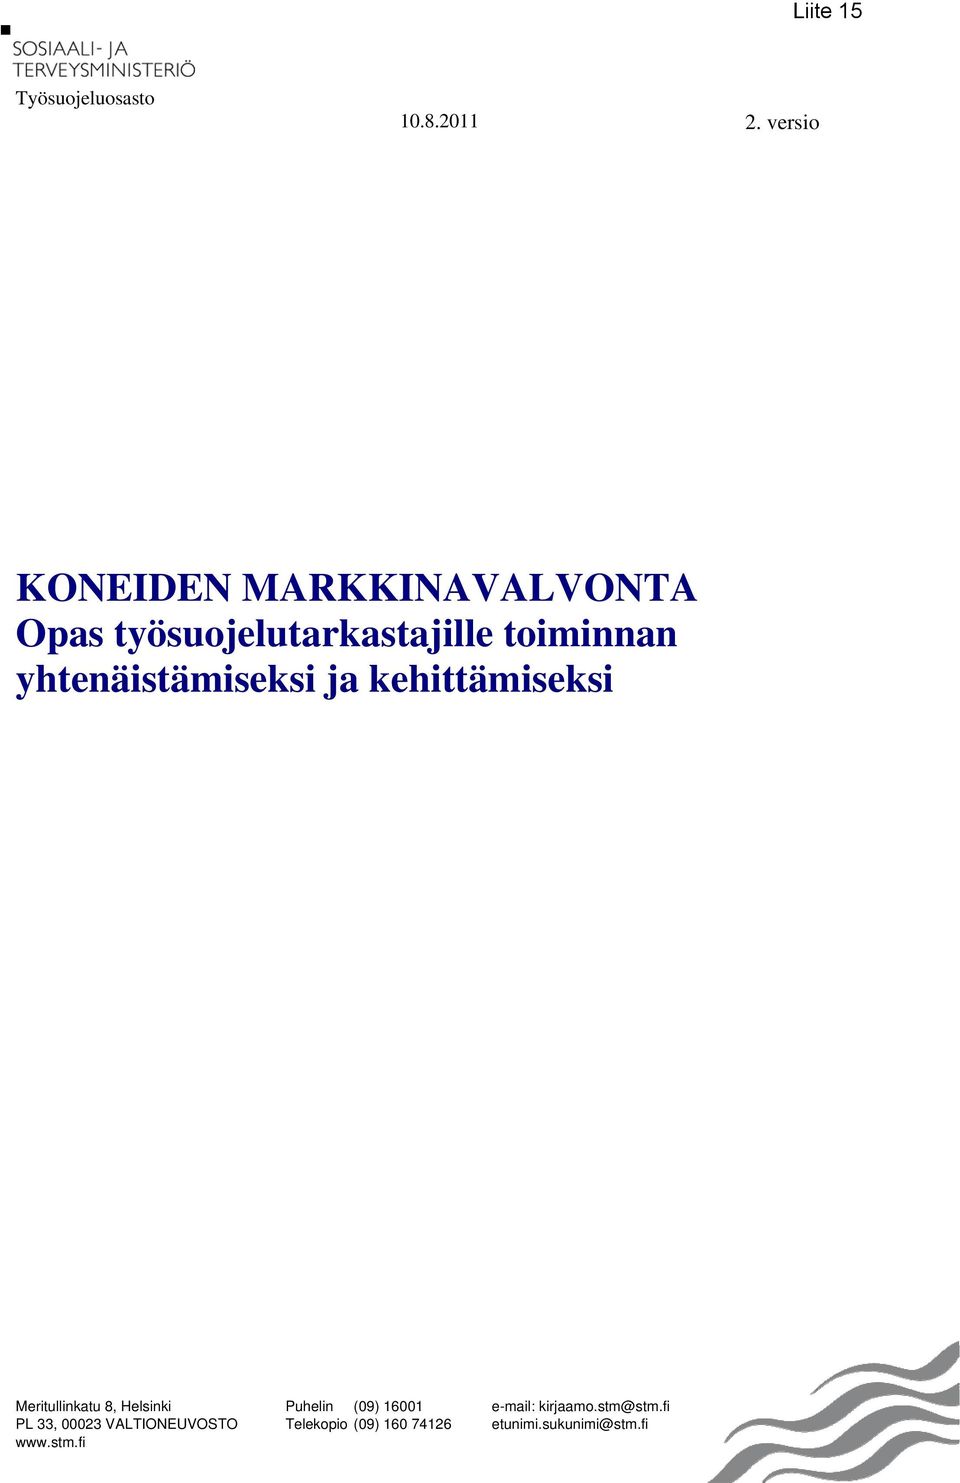 yhtenäistämiseksi ja kehittämiseksi Meritullinkatu 8, Helsinki PL 33, 00023